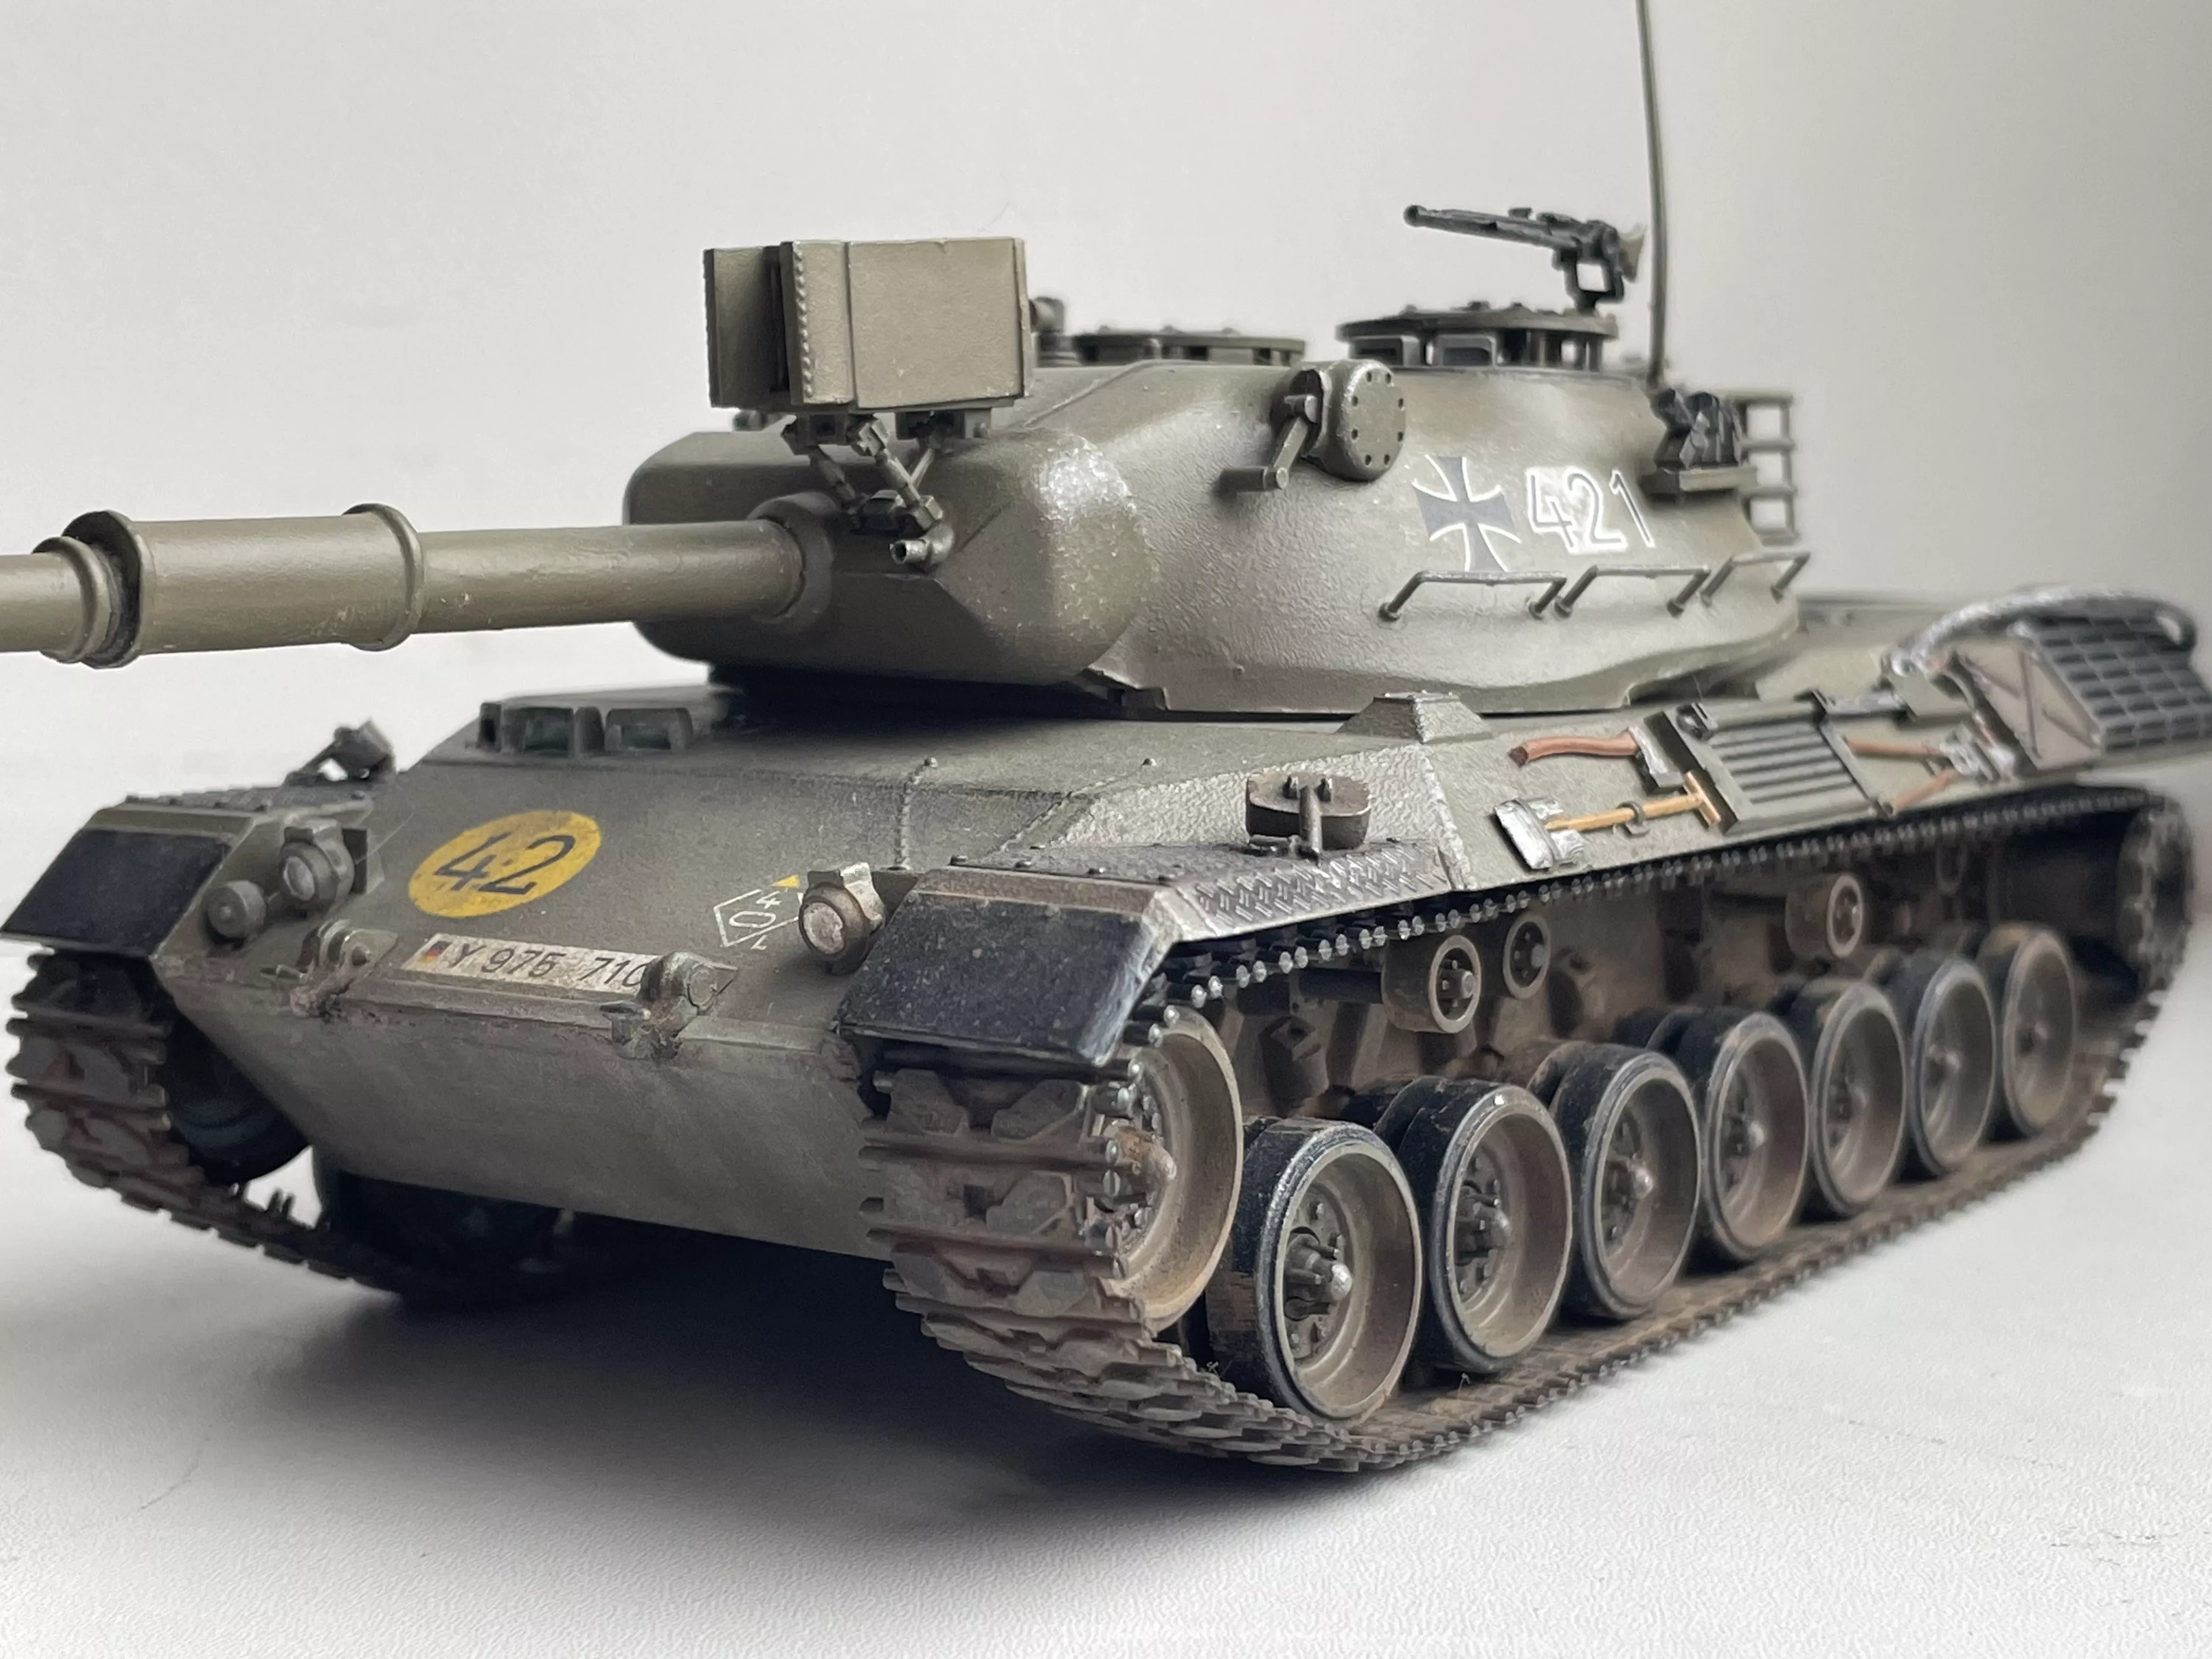 Западно-германский танк Leopard c 105мм. пушкой и 1фигурой